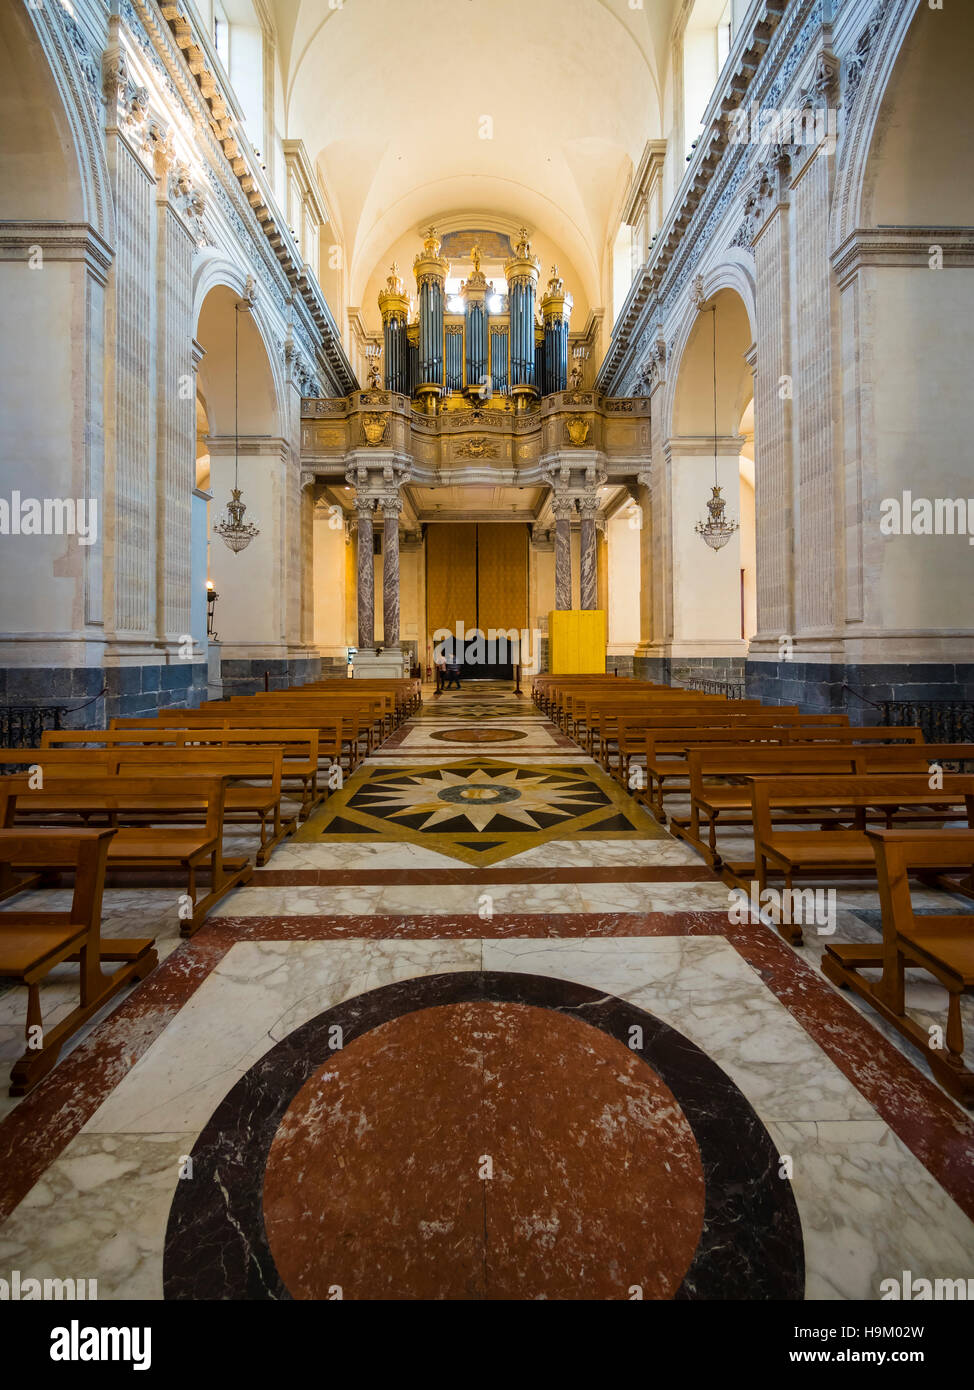 Orgue, cathédrale Sant Agata, Piazza del Doumo, Province de Catane, Sicile, Italie Banque D'Images